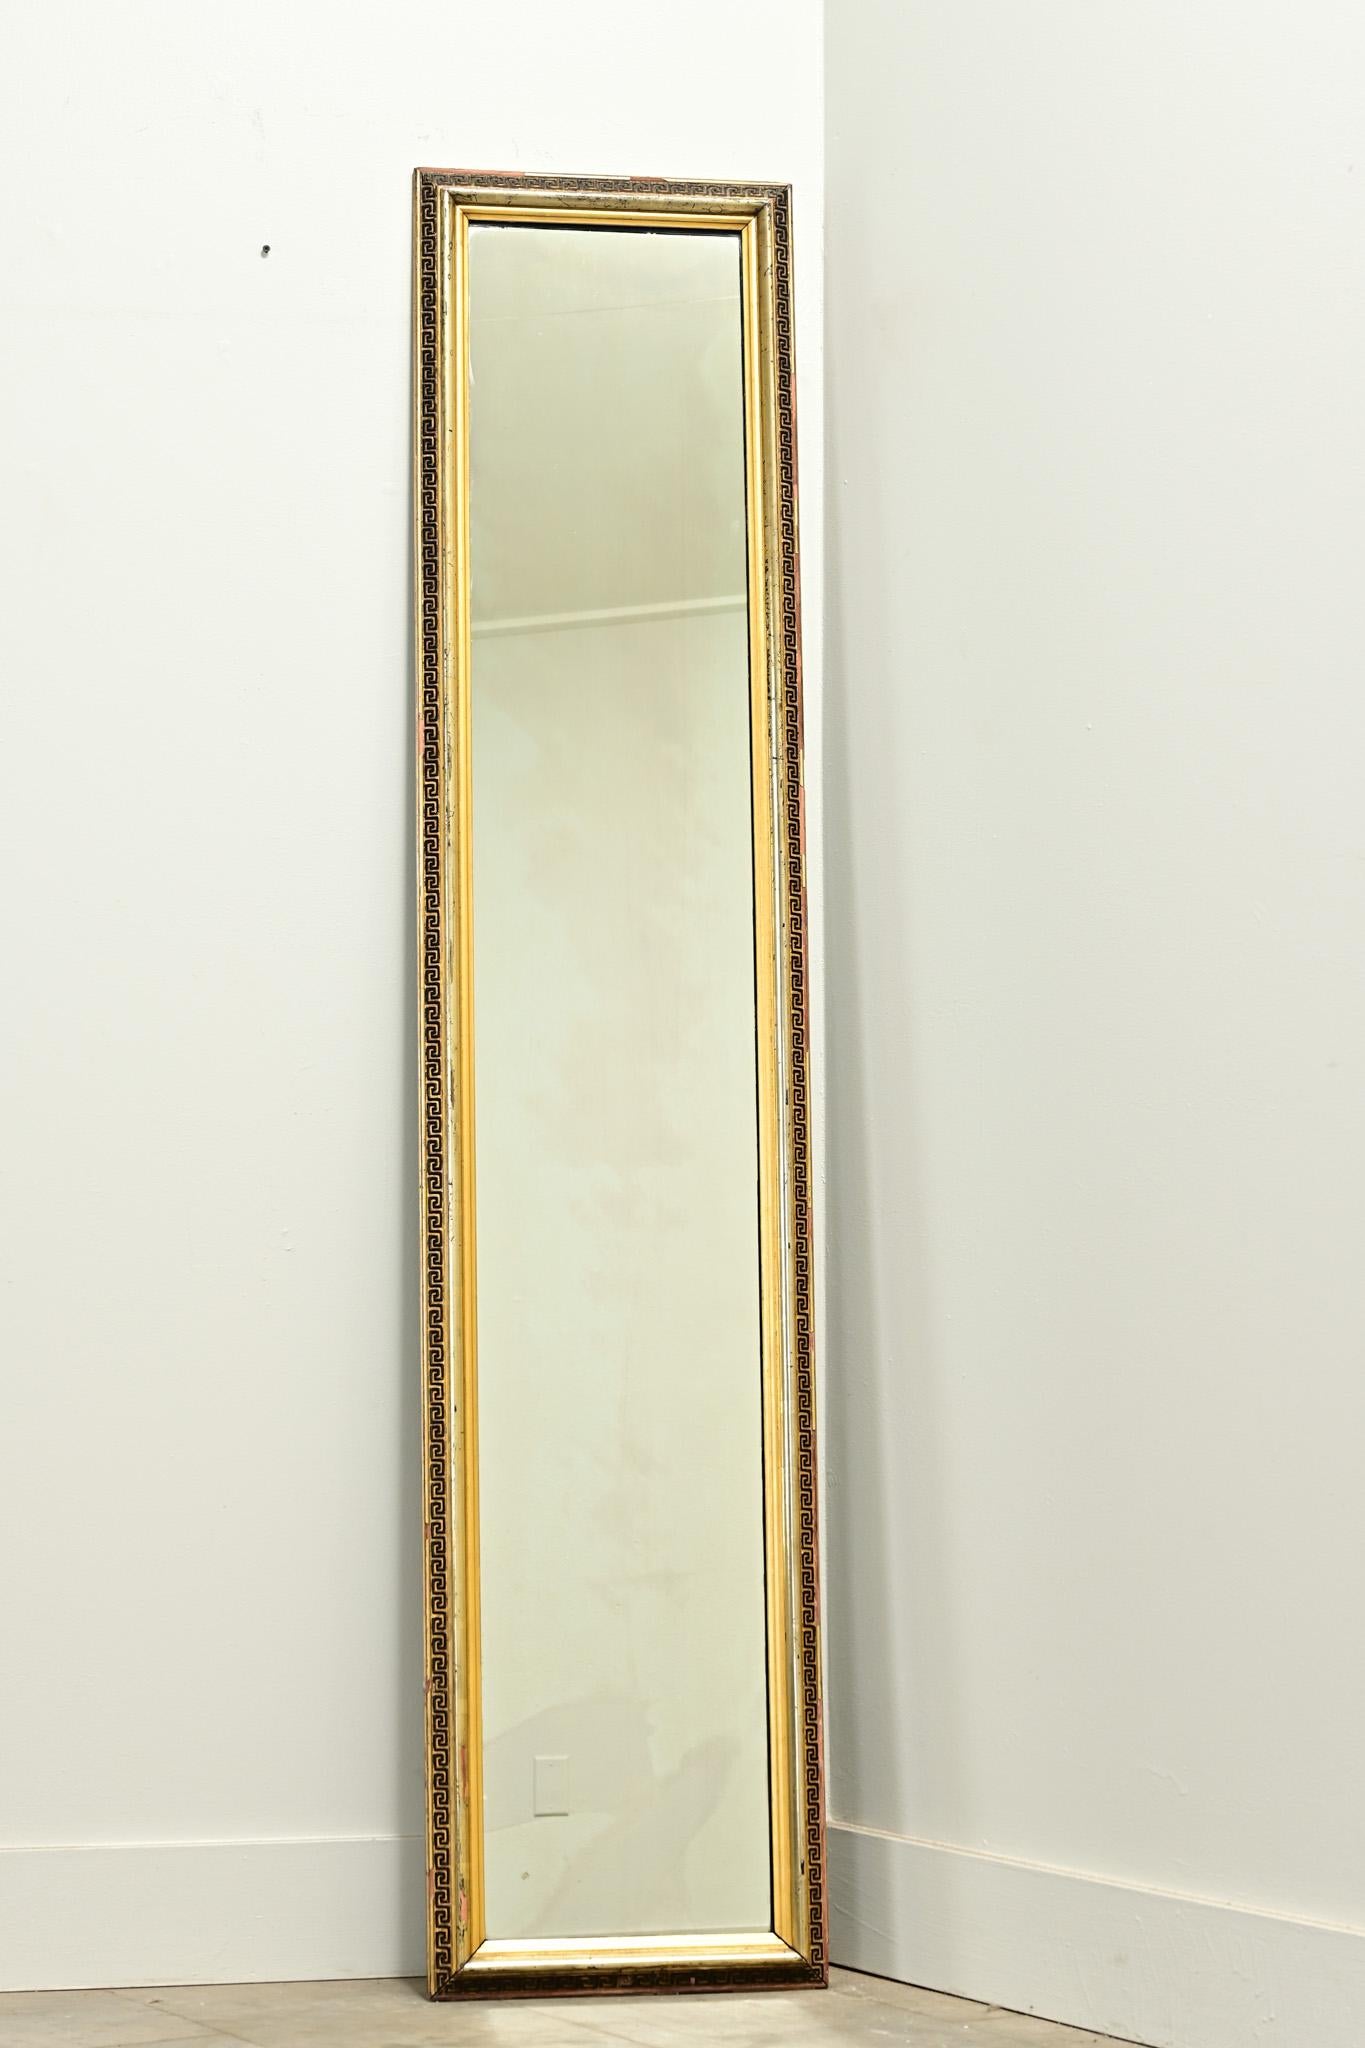 Ein hoher vergoldeter Empire-Spiegelrahmen aus den Niederlanden mit einem geschnitzten griechischen Schlüsselmotiv und einer originalen Spiegelplatte. Achten Sie darauf, die detaillierten Bilder zu sehen, um den aktuellen Zustand dieses antiken